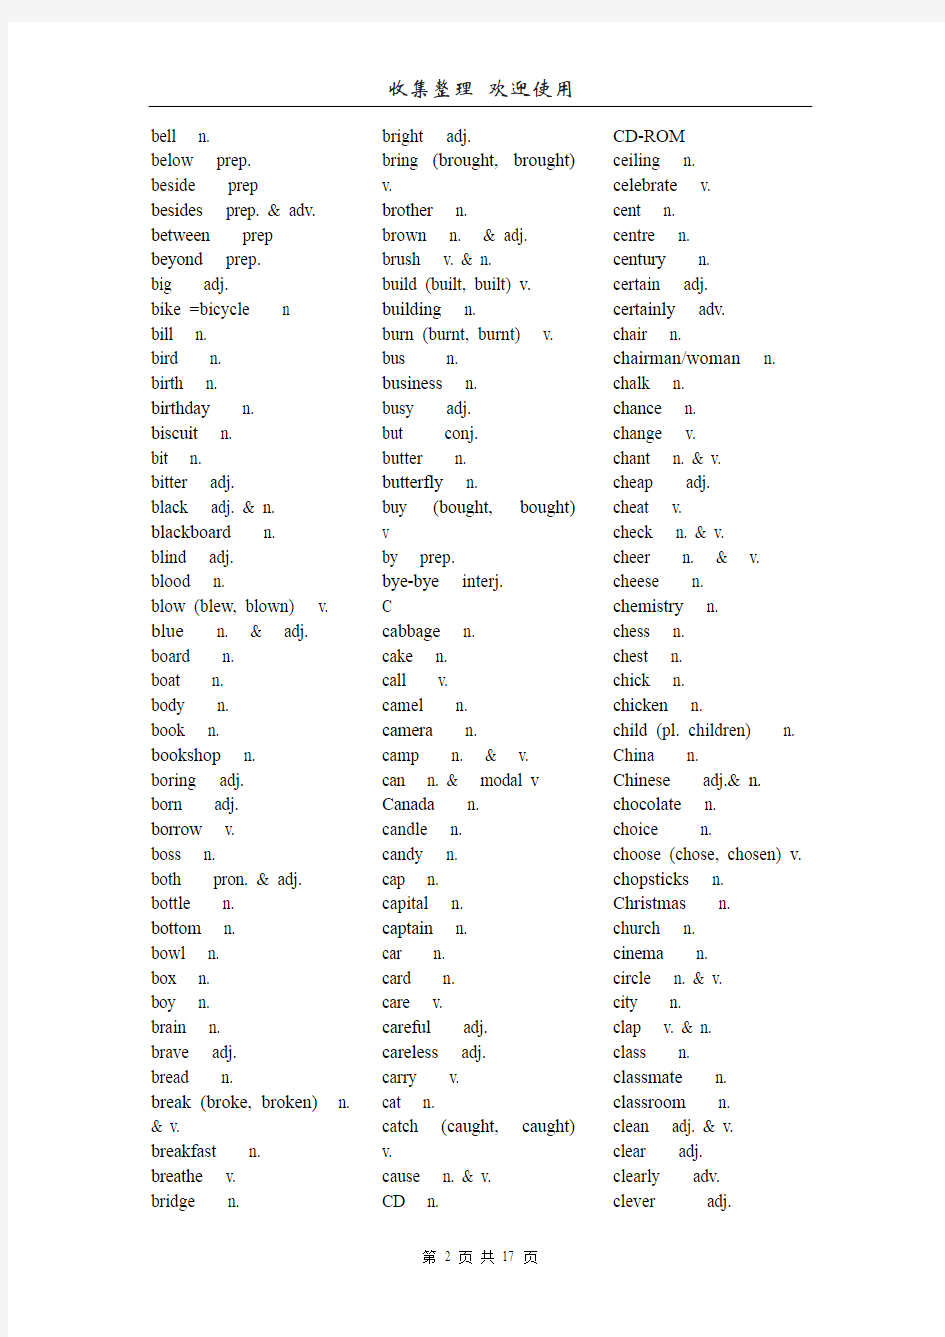 初中英语要求掌握的词汇表(1600条)